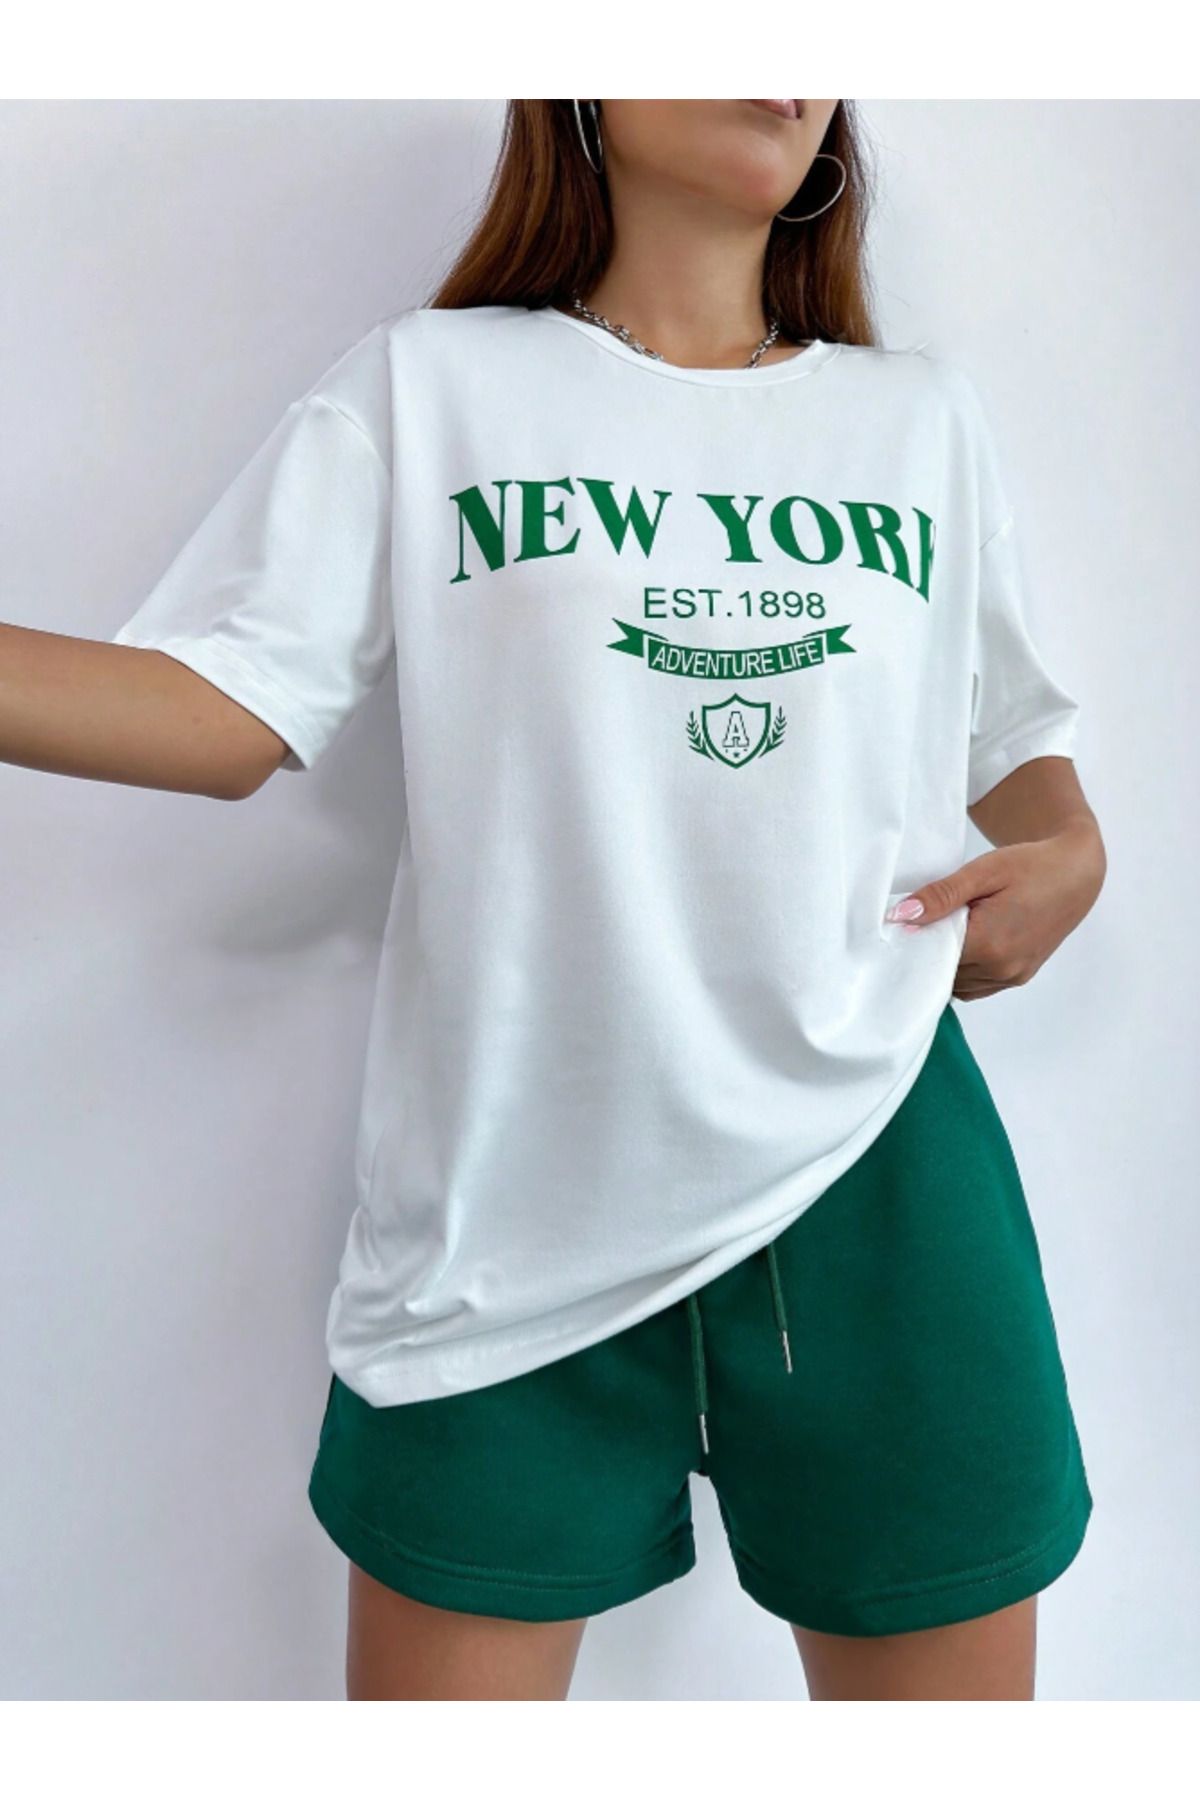 Revasser Unisex Kadın/Erkek Beyaz Yeşil NewYork Özel Baskılı Şort T-shirt Takımı